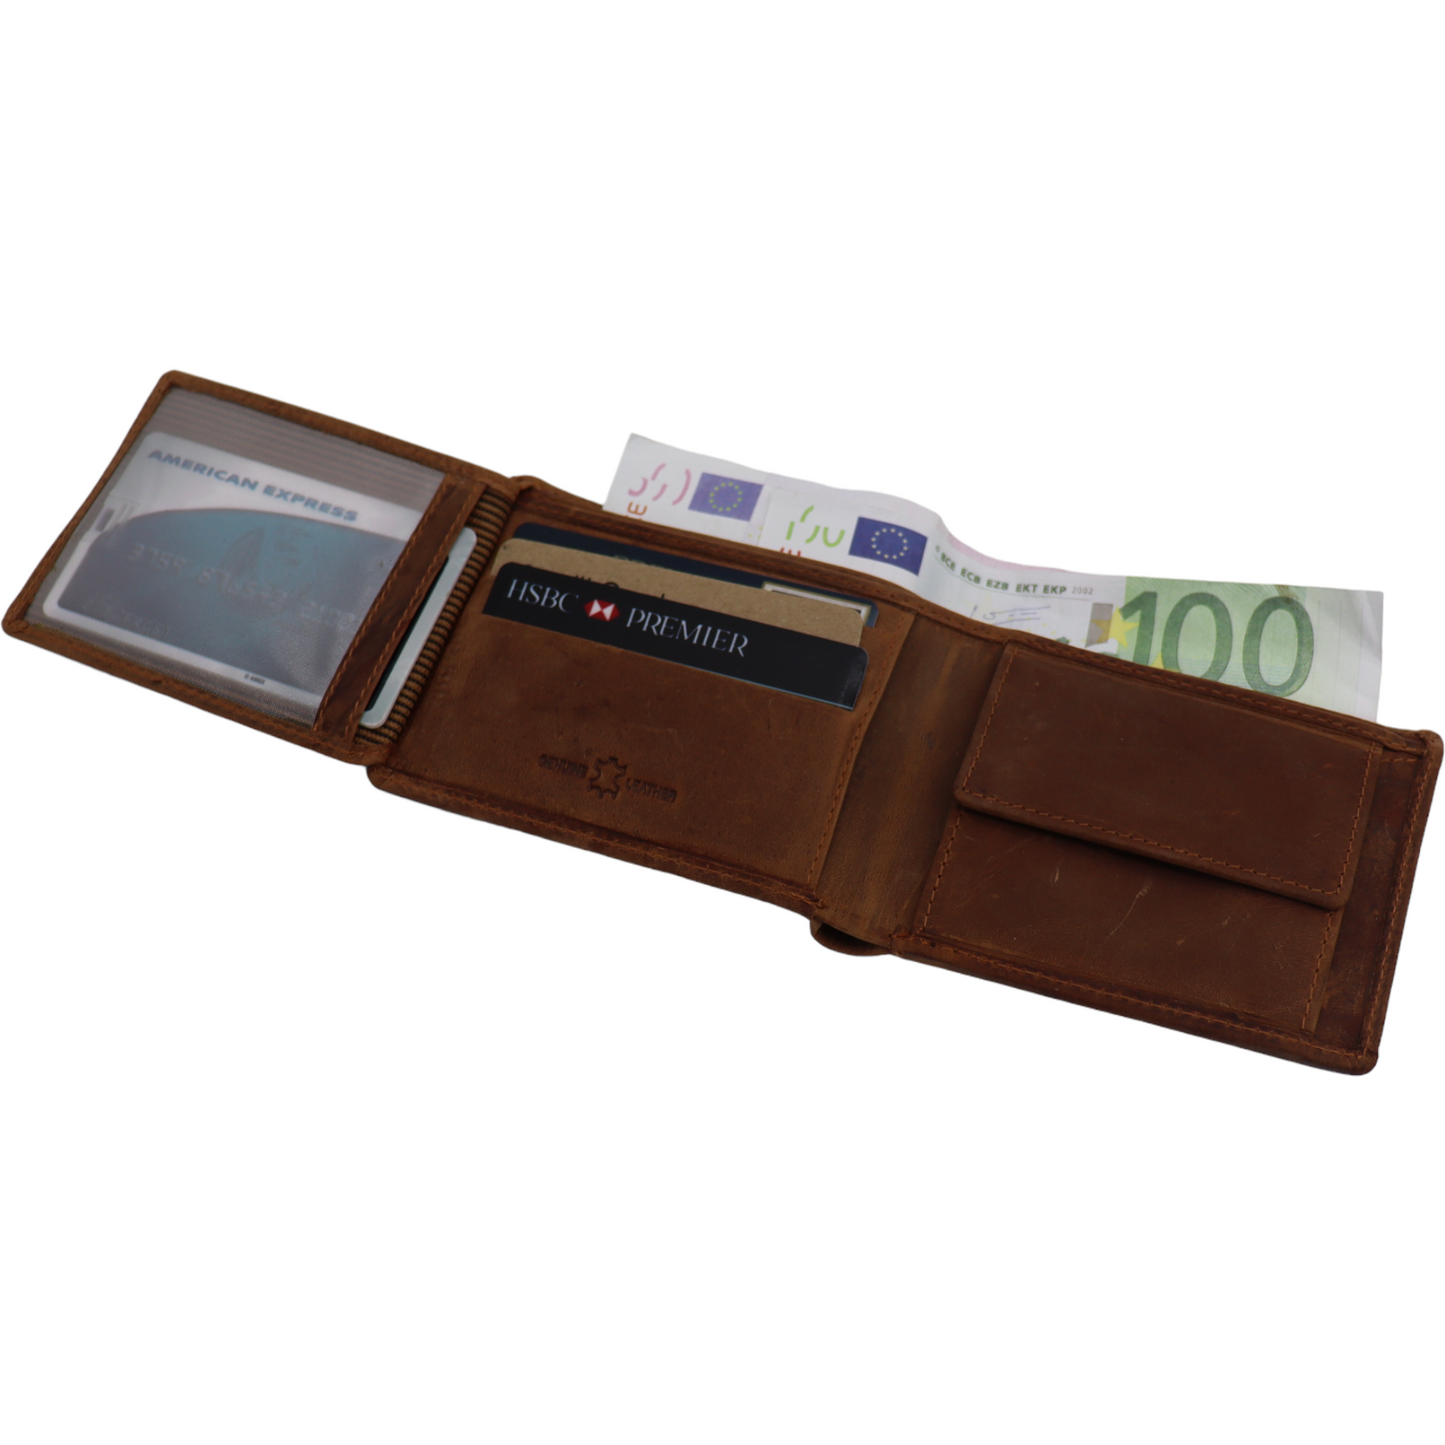 Herrenbrieftasche - Geldbörse